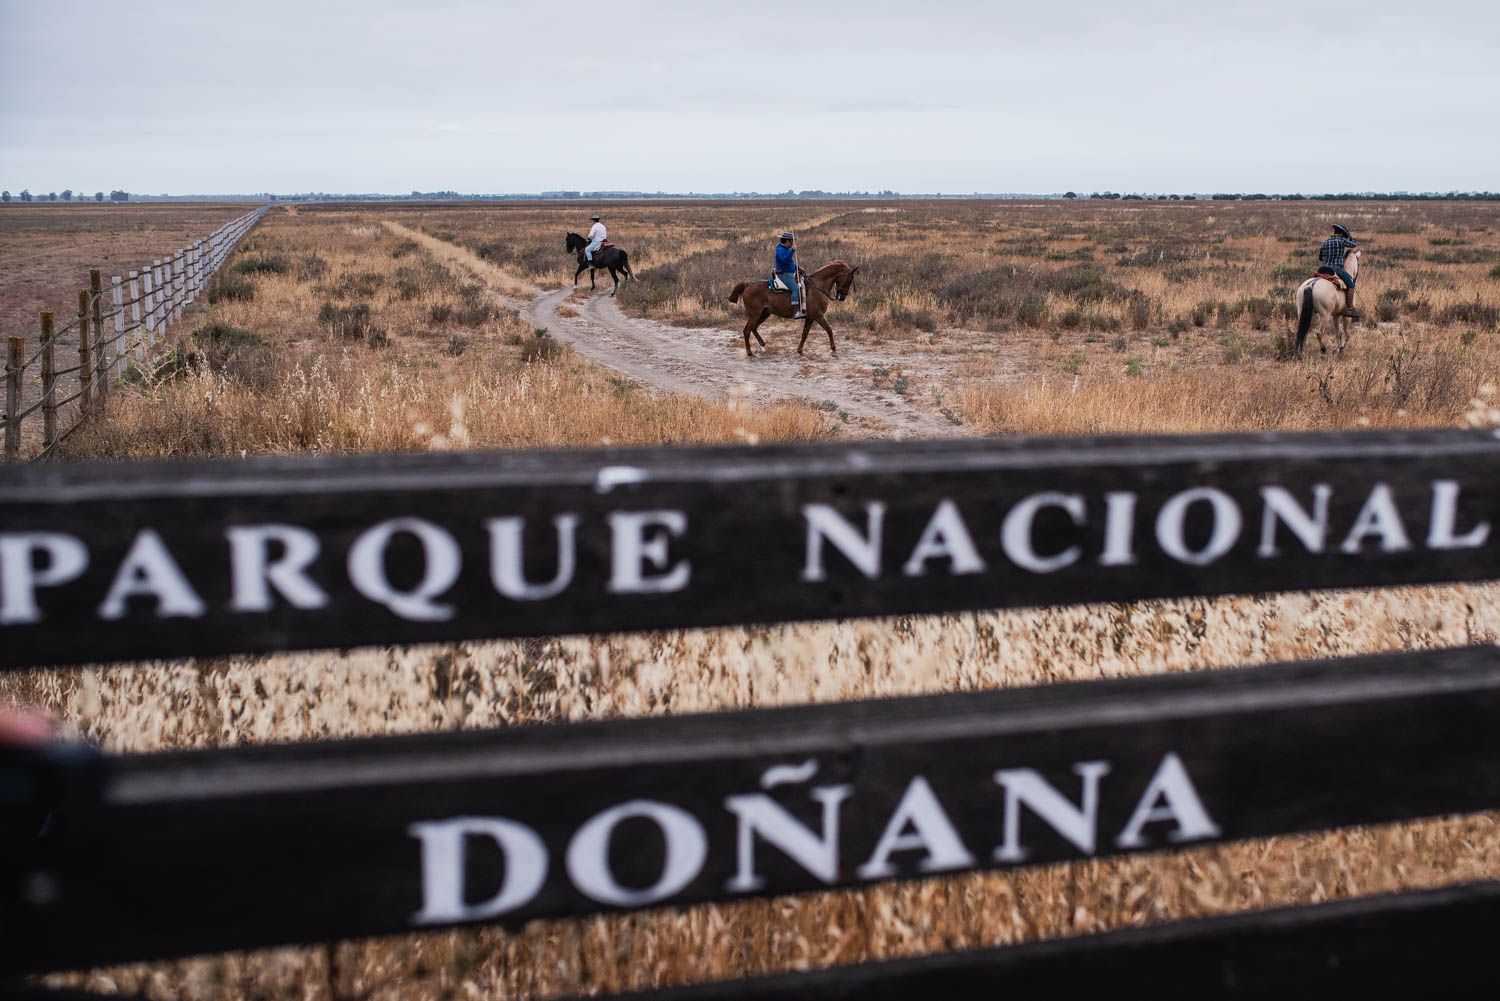 La saca de las yeguas, de Doñana a El Rocío, en imágenes.